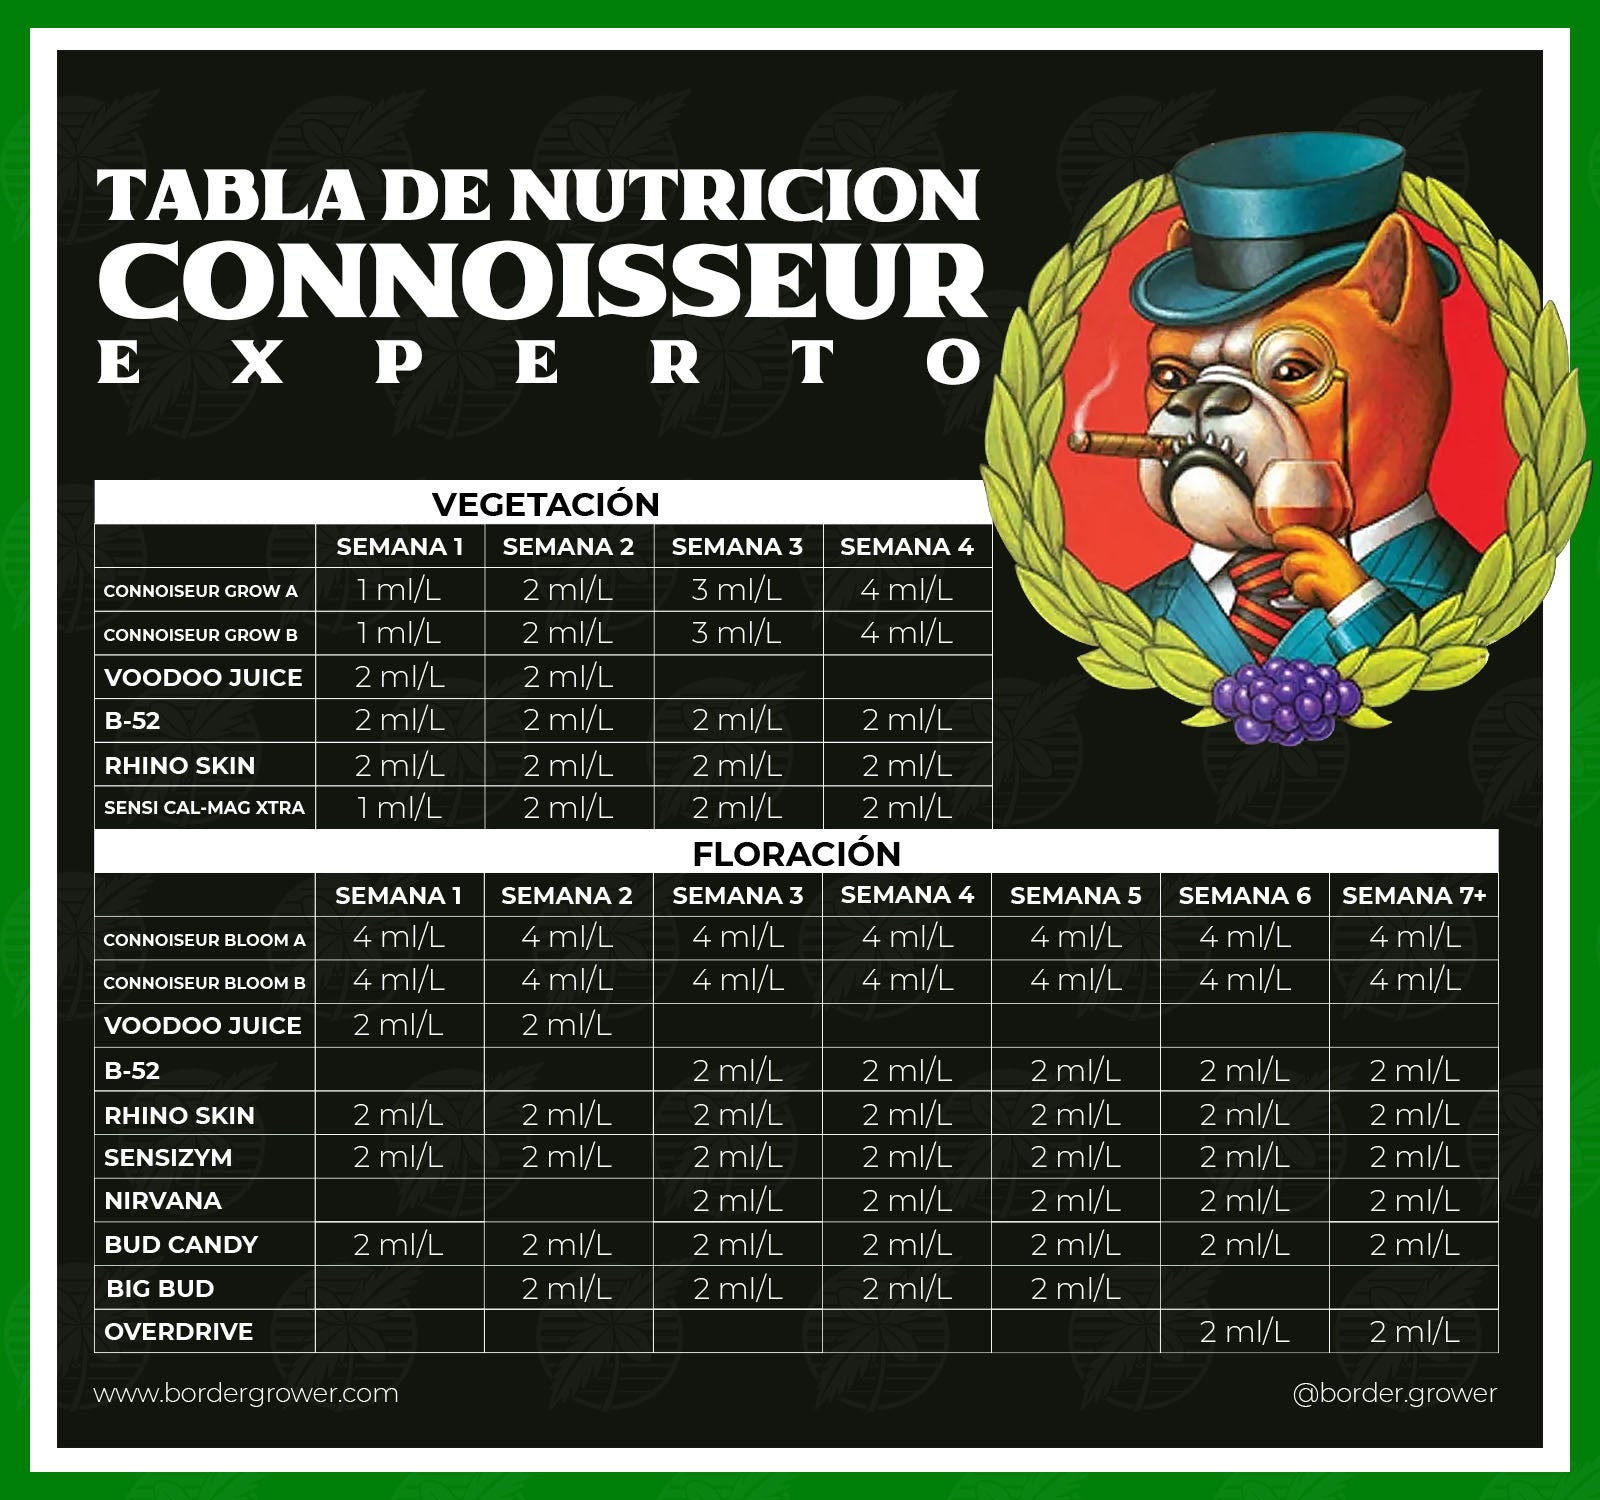 Este es el calendario de cultivo y tabla de nutricion de Connosseur ph perfect de Advanced Nutrients en Espanol y en combinacion con otros fertilizantes como Bud Candy Bid Bud B52 Tarantula Piranha Voodoo Juice y todos los fertilizantes de Advanced Nutrients en Mexico y en español